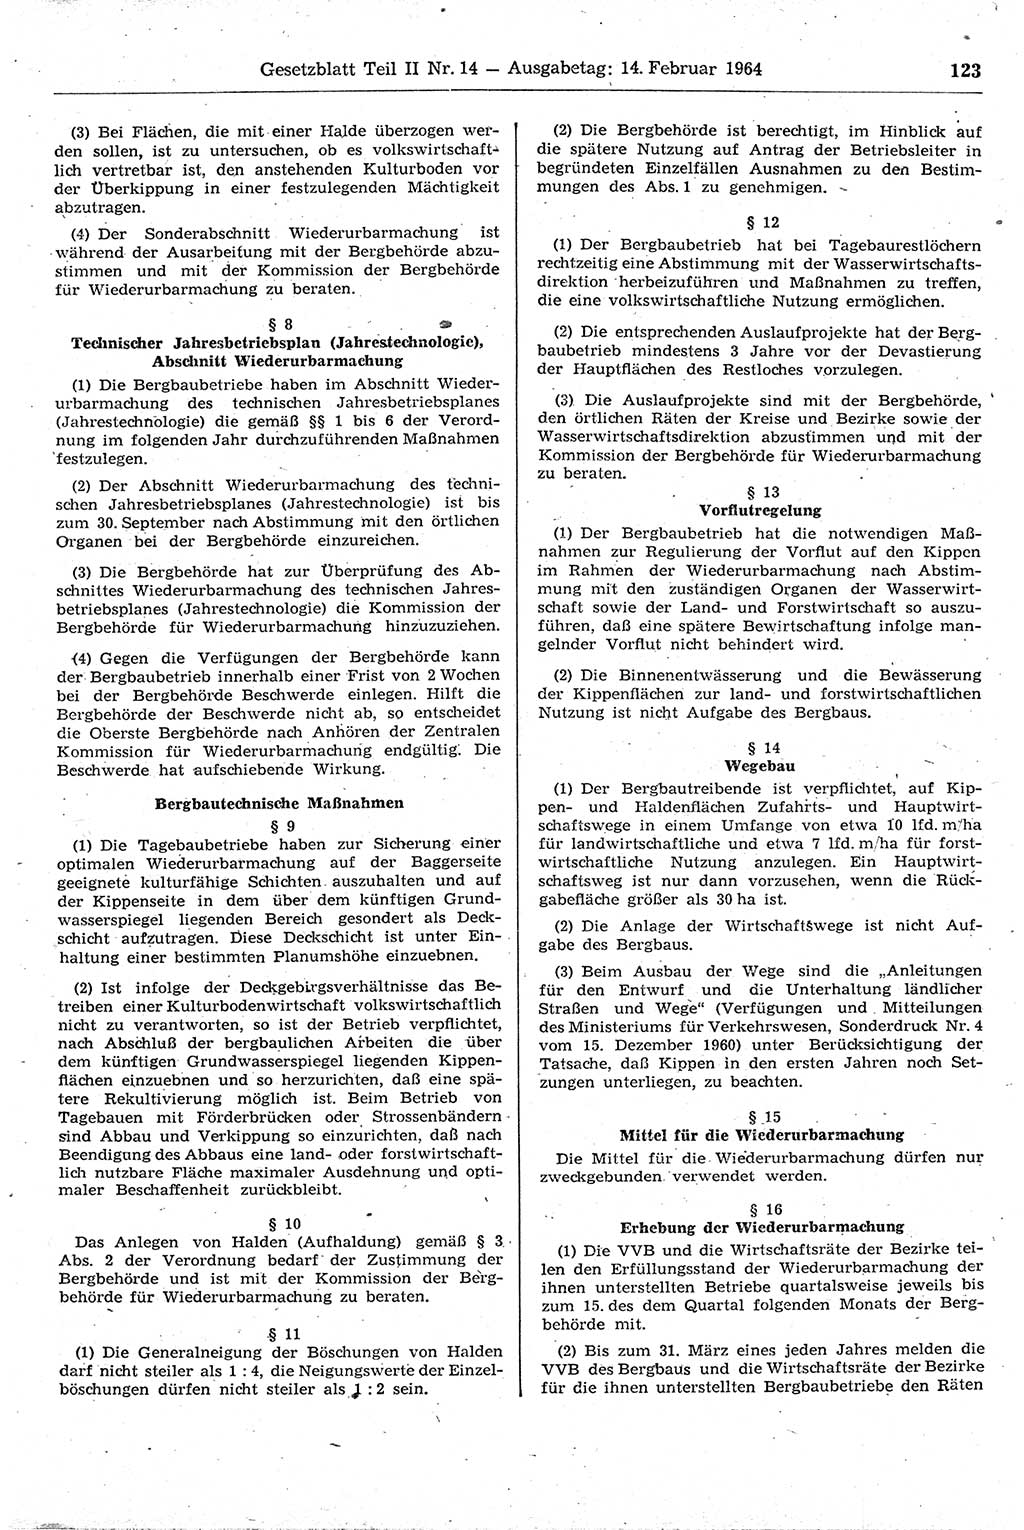 Gesetzblatt (GBl.) der Deutschen Demokratischen Republik (DDR) Teil ⅠⅠ 1964, Seite 123 (GBl. DDR ⅠⅠ 1964, S. 123)